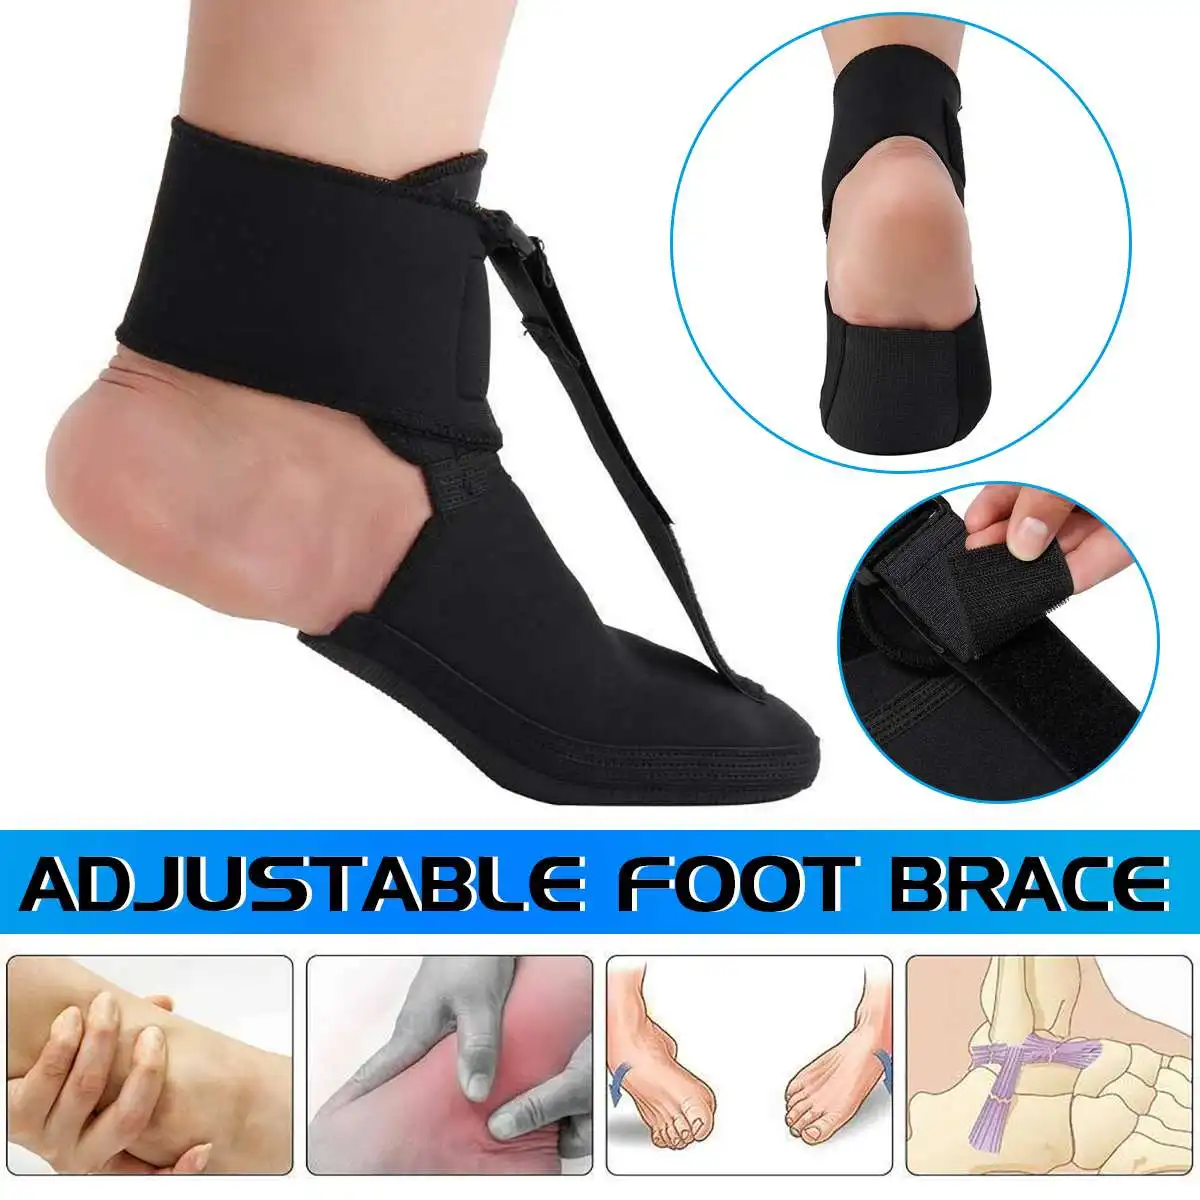  S/M/L Black Adjustable Plantar Fasciitis Night Splint Sport Pain Toe Foot Brace Support Stabilizer 